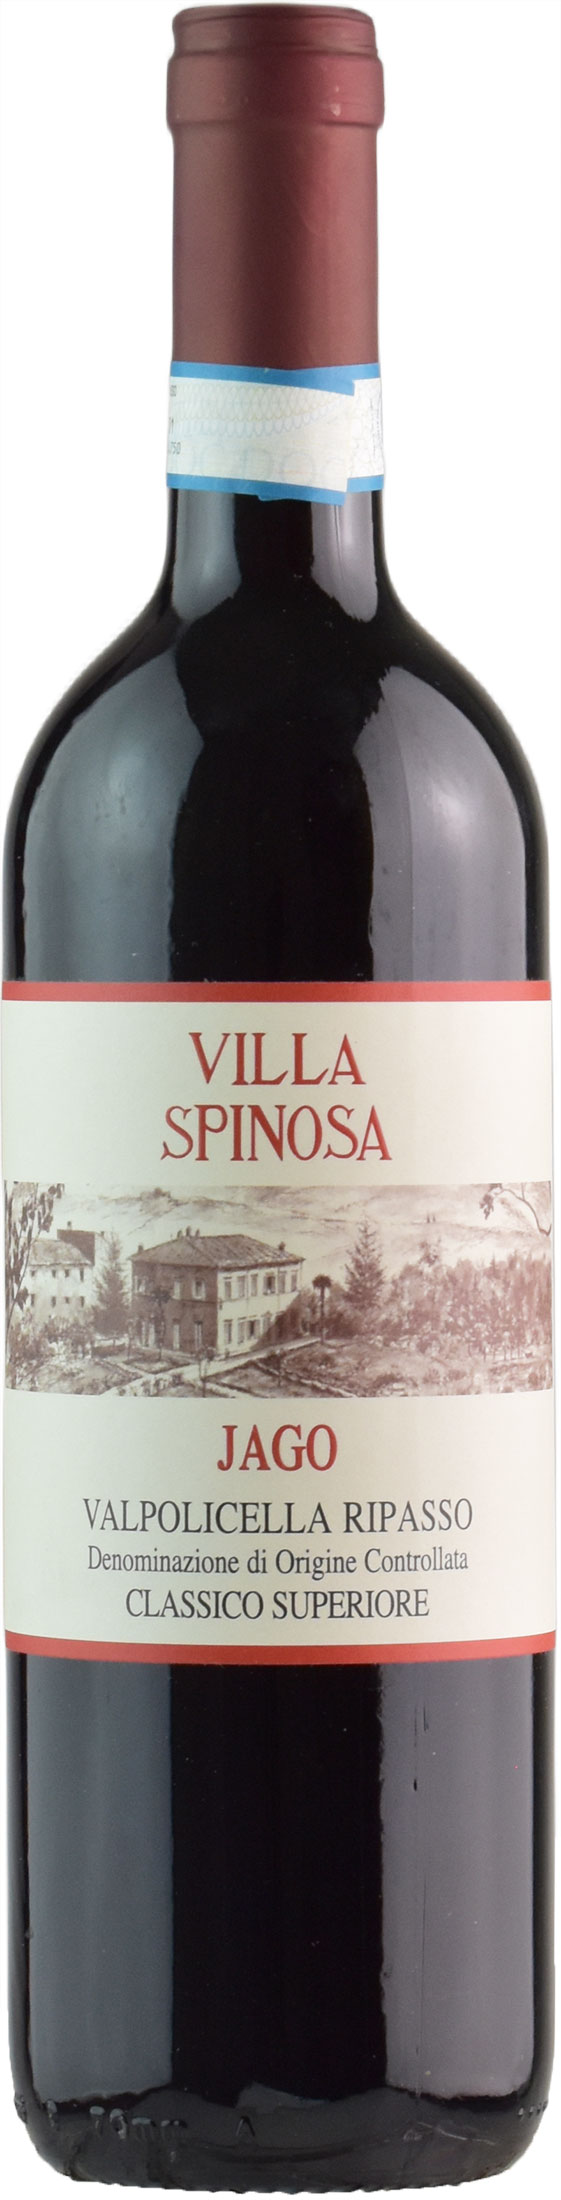 Villa Spinosa Valpolicella Ripasso Superiore Jago 2018